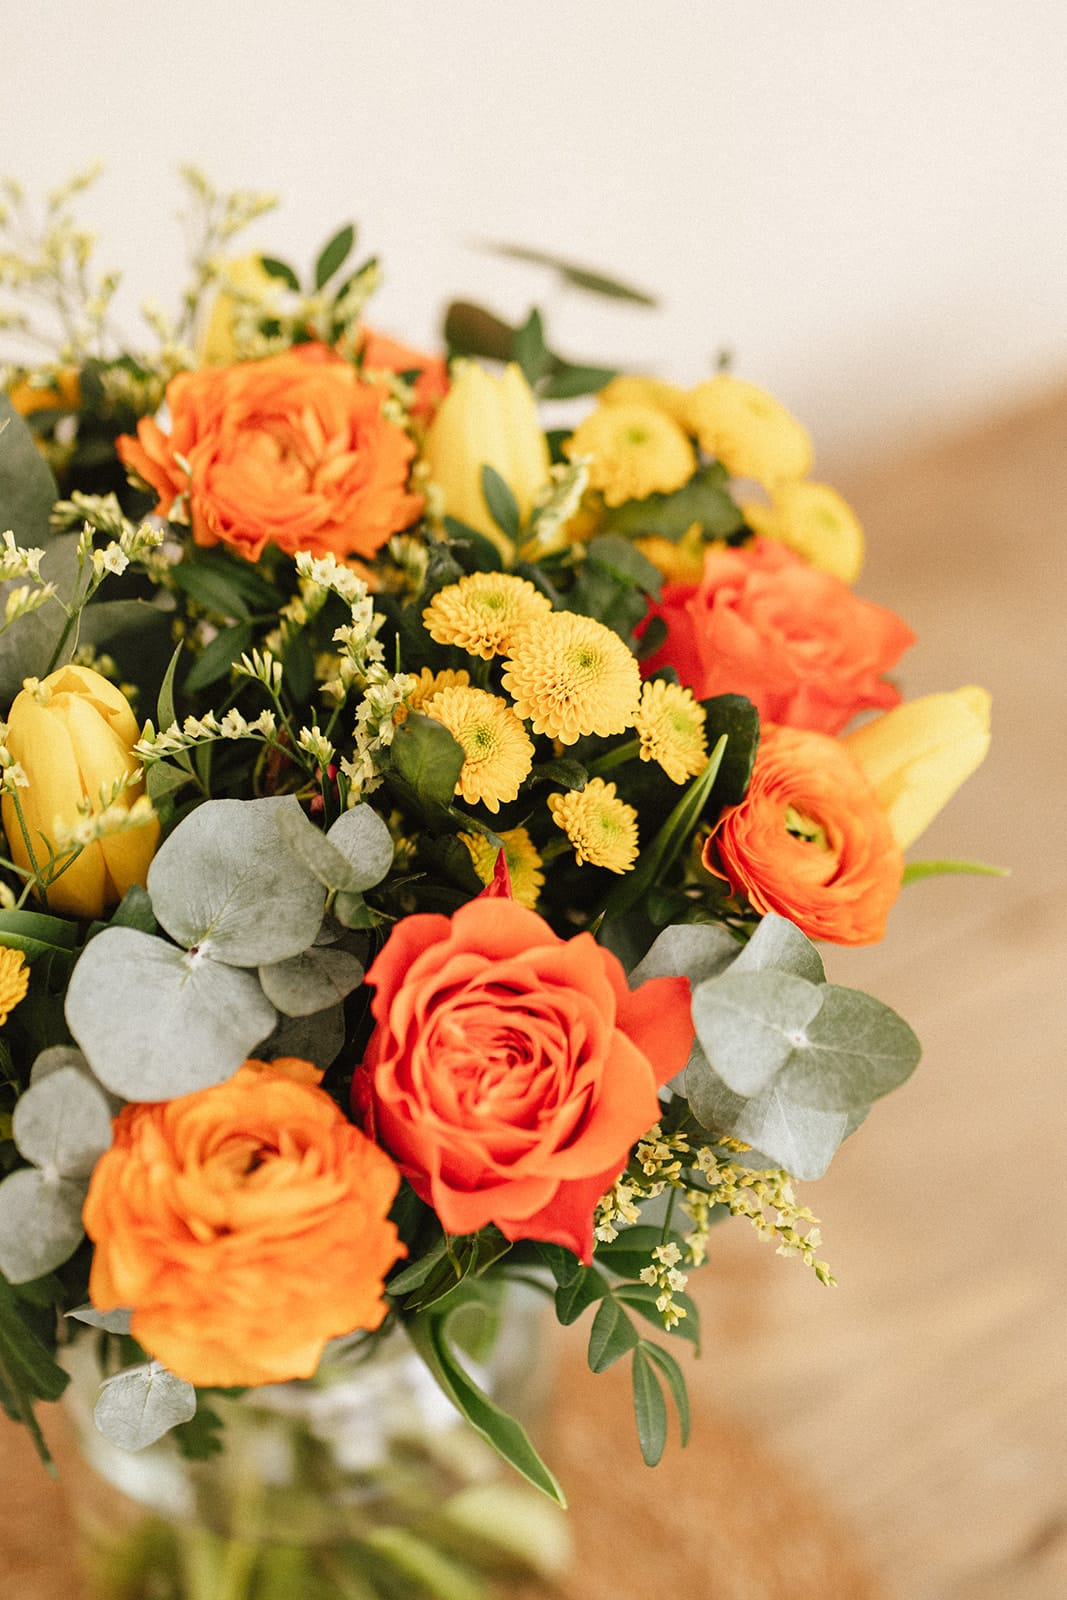 Kanel-Blumen-Lieferung-Orangen-Bouquet-Valia